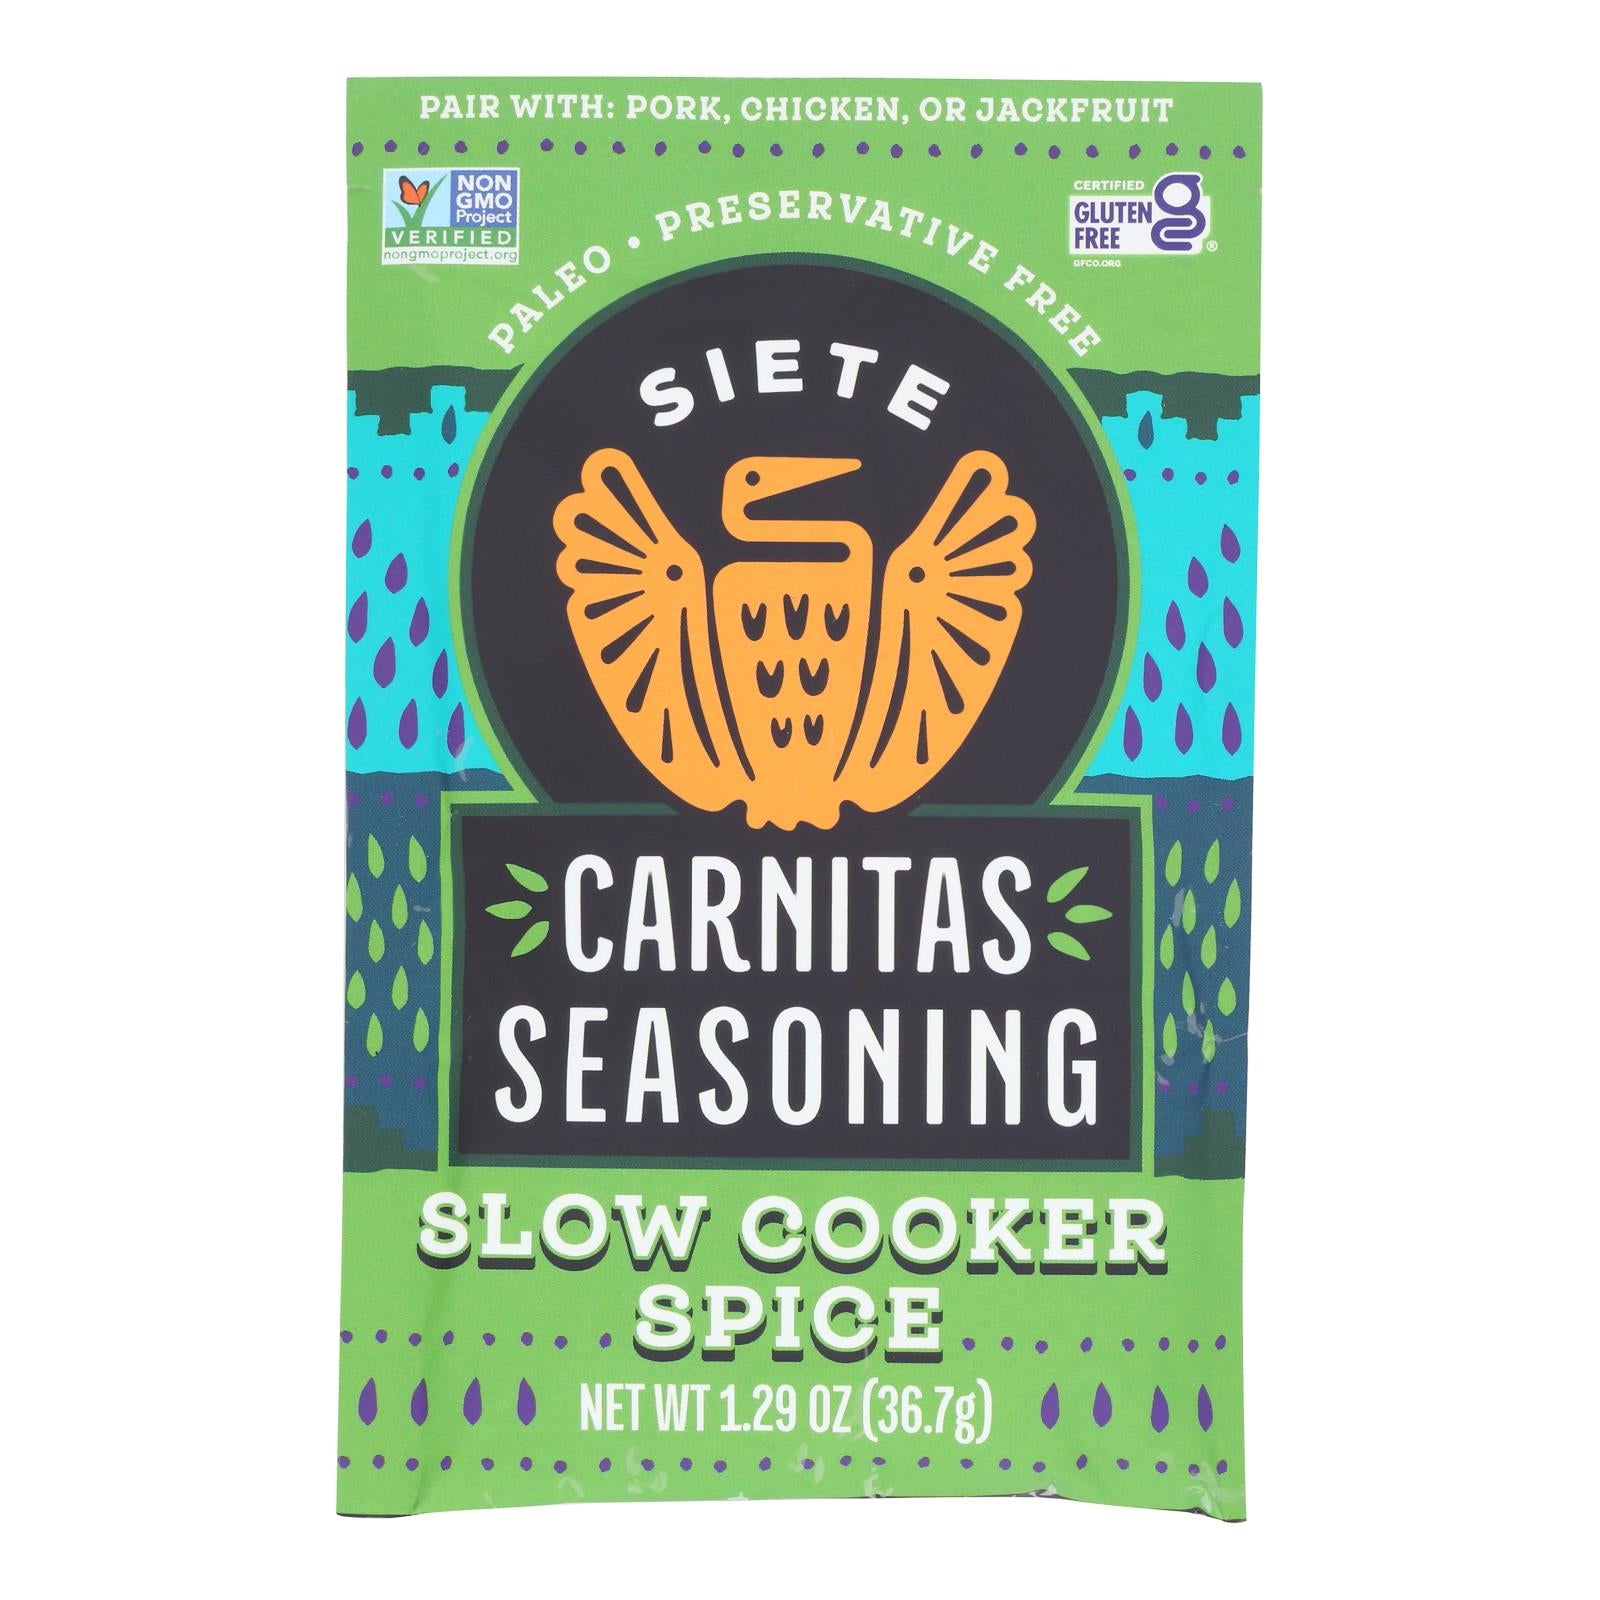 Siete - Seasoning Carnitas - Case Of 12-1.29 Oz